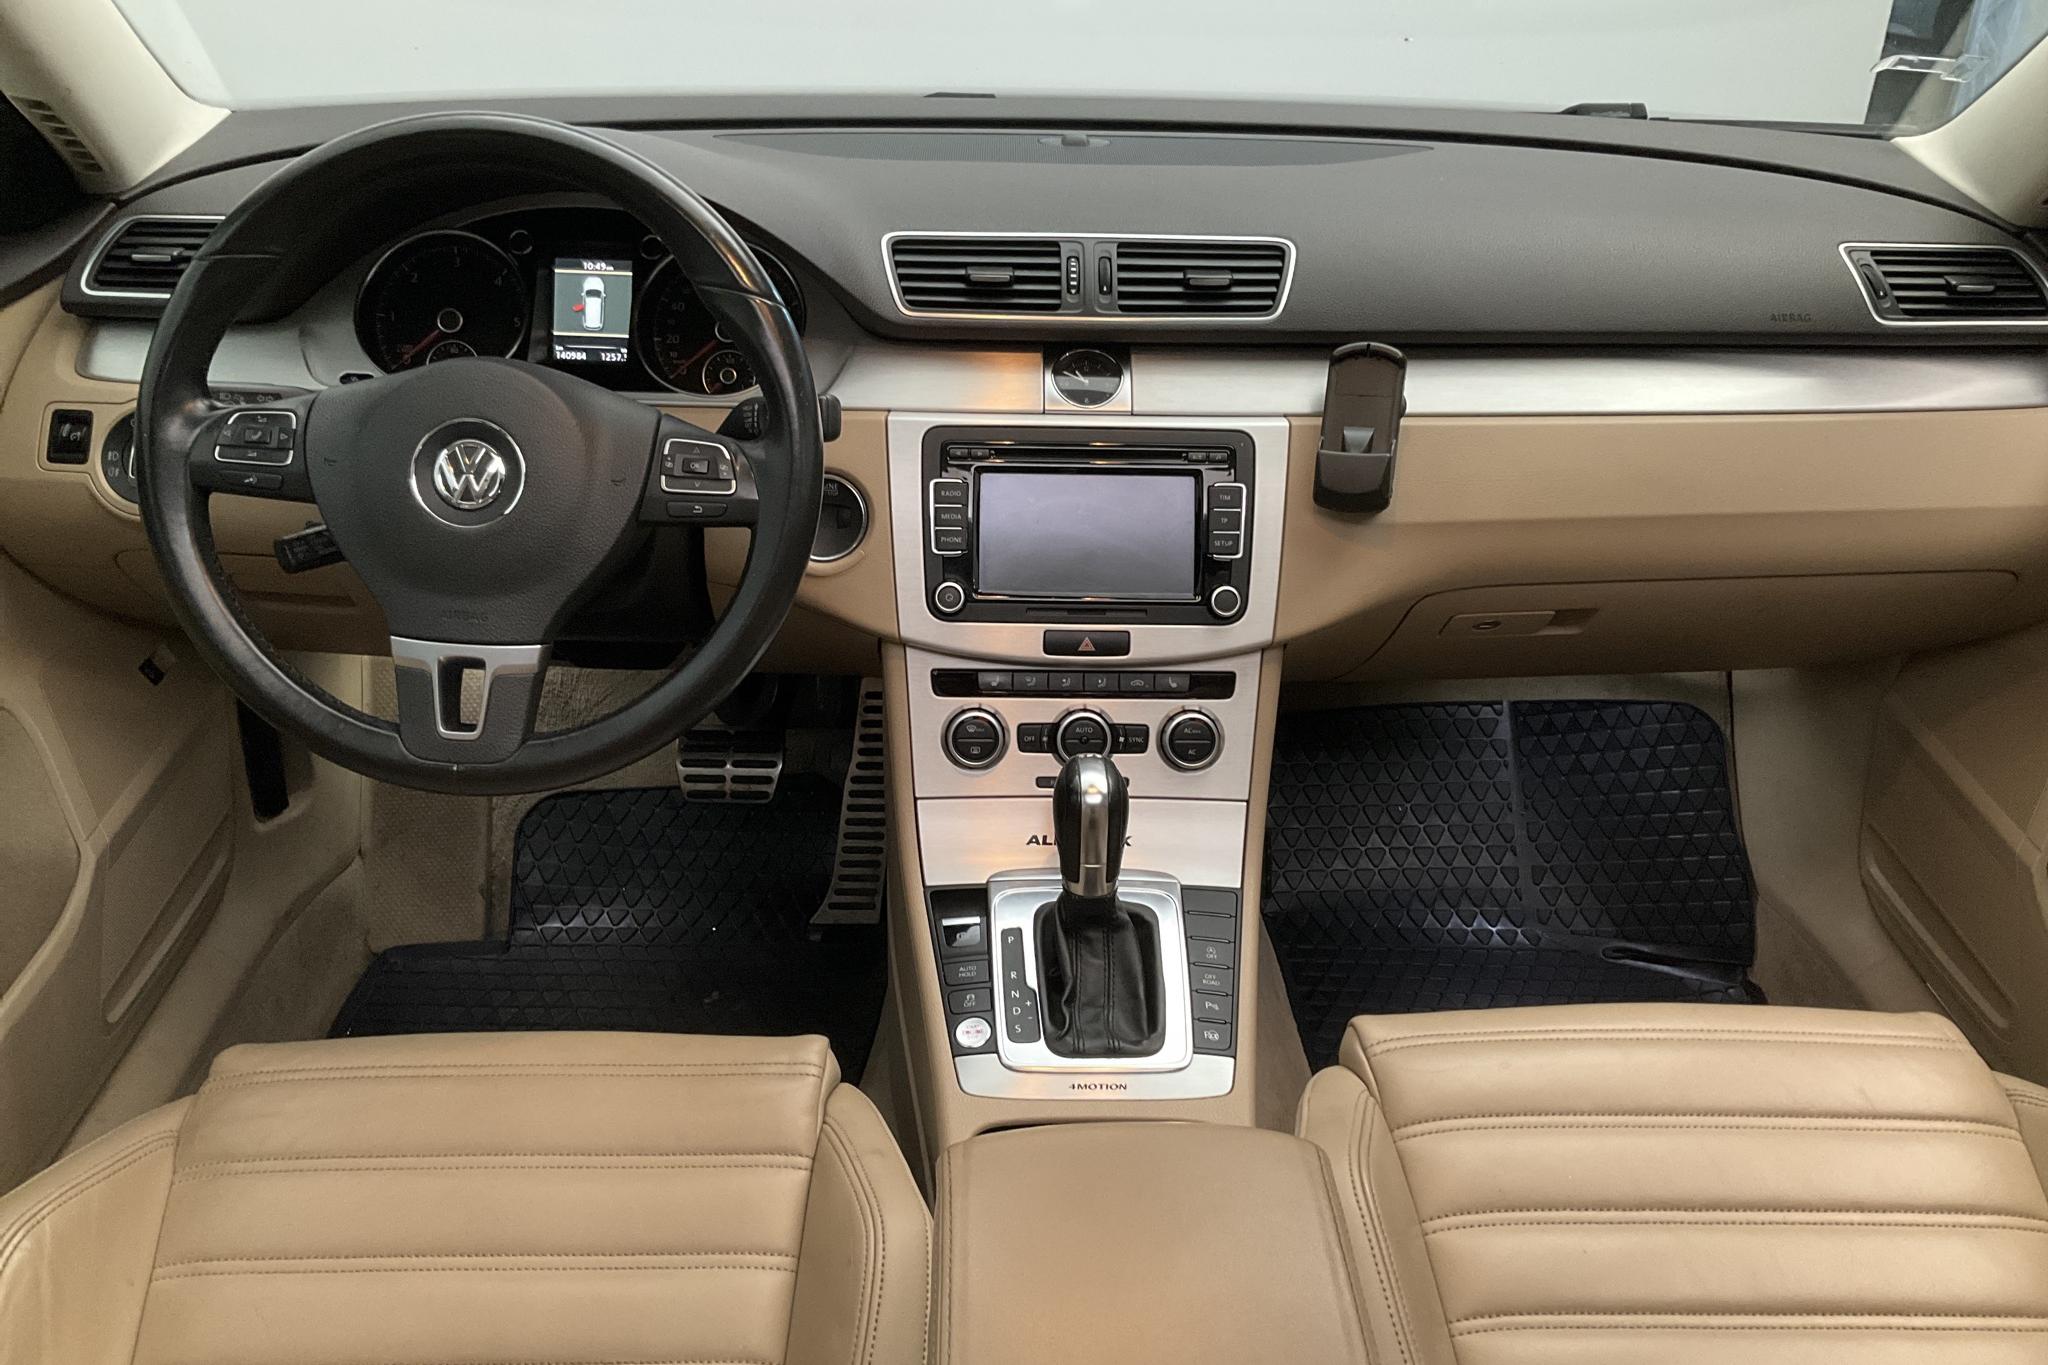 VW Passat Alltrack 2.0 TDI BlueMotion Technology 4Motion (170hk) - 140 980 km - Automatic - Light Grey - 2012